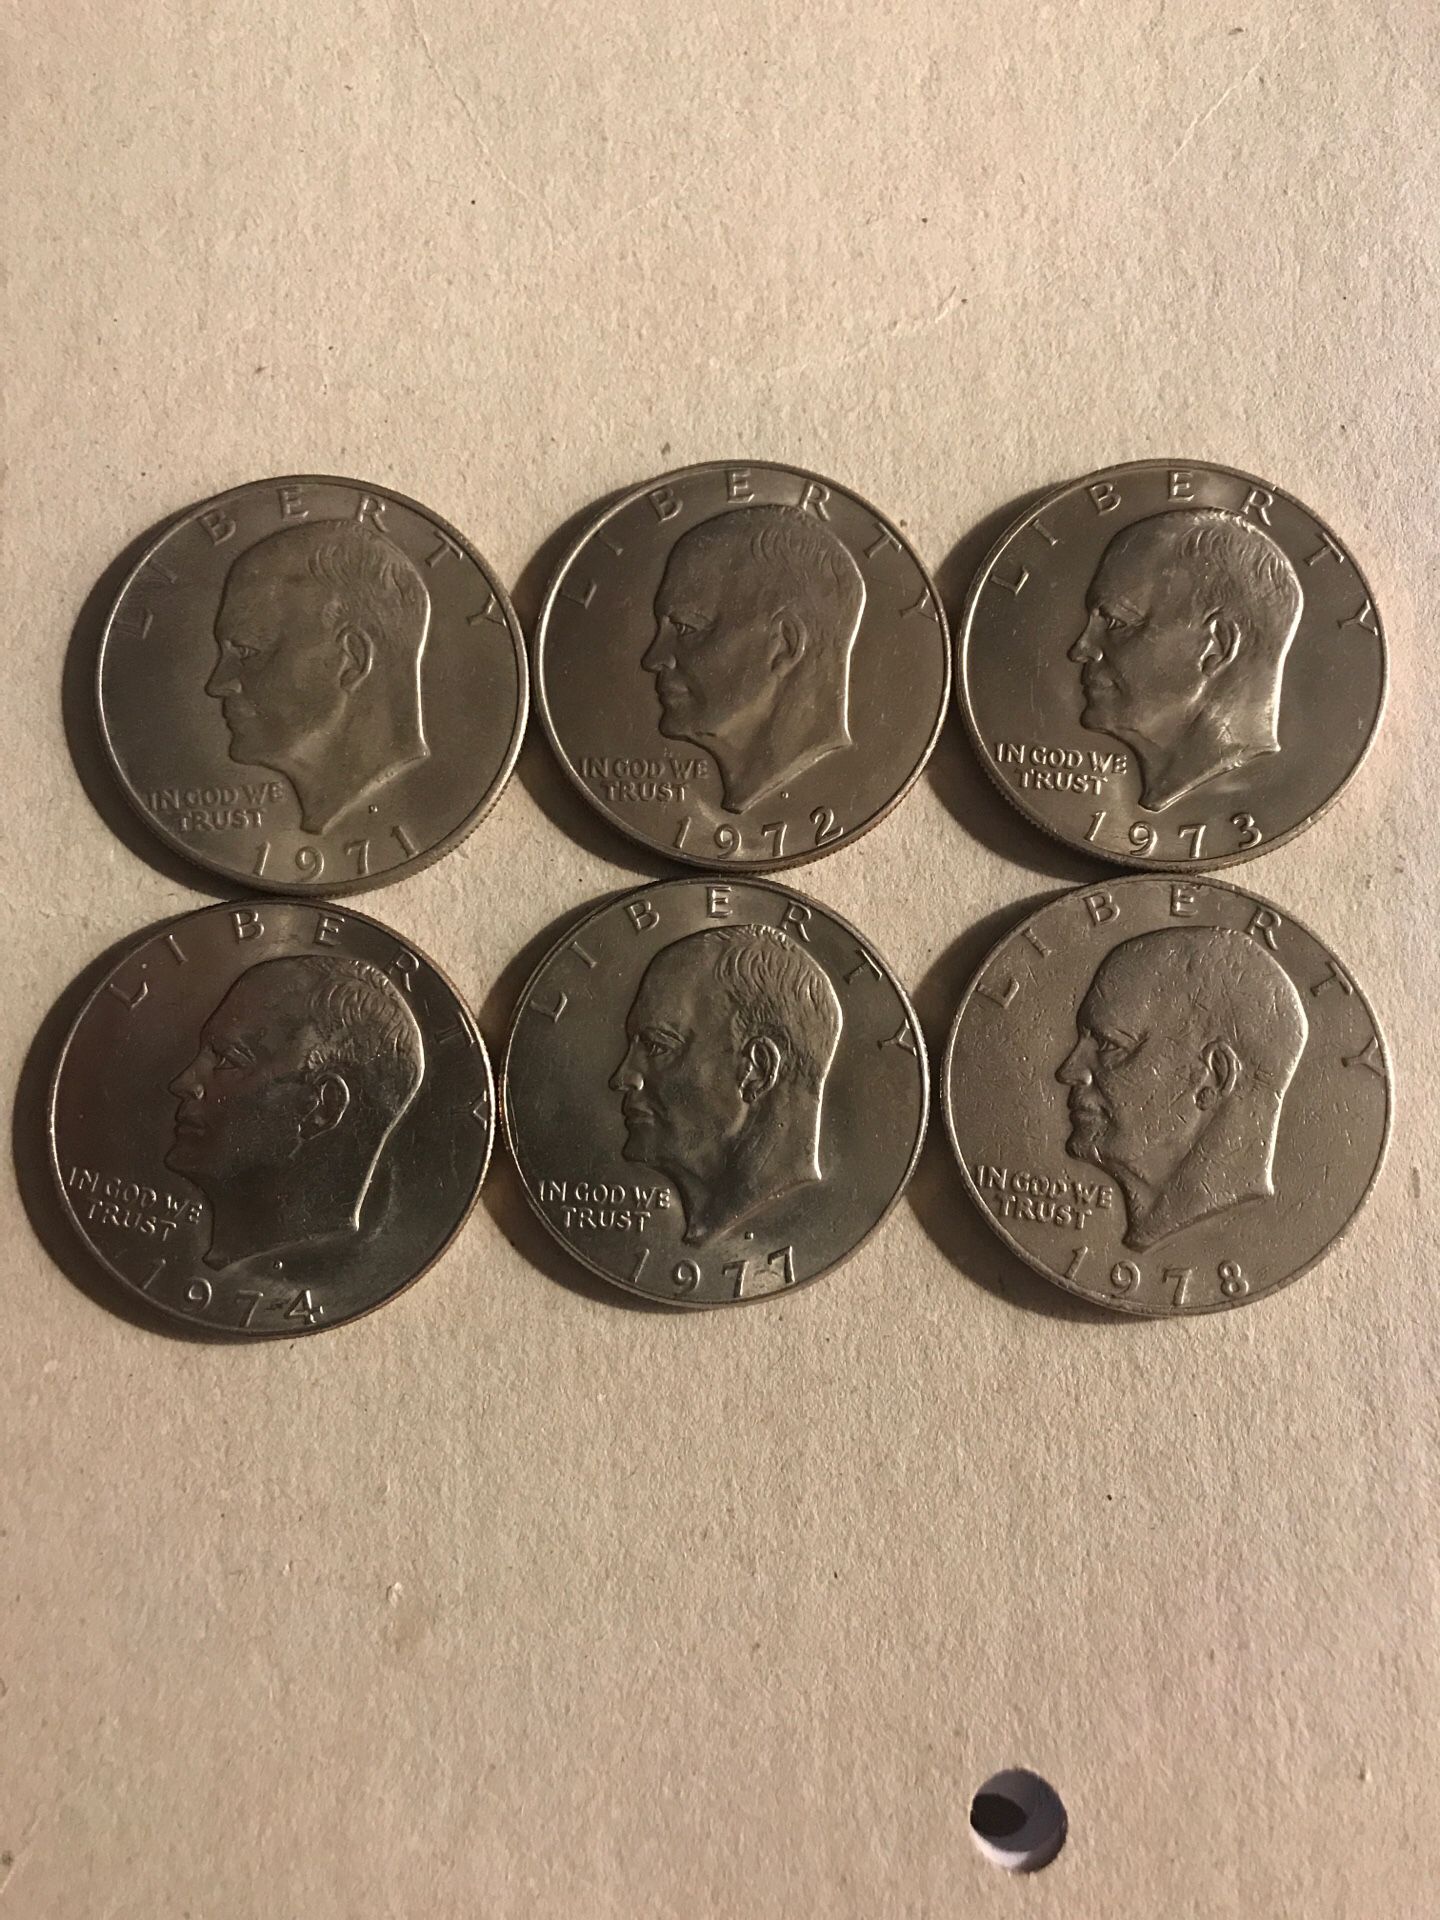 Eisenhower /one dollar 6 pieces different date